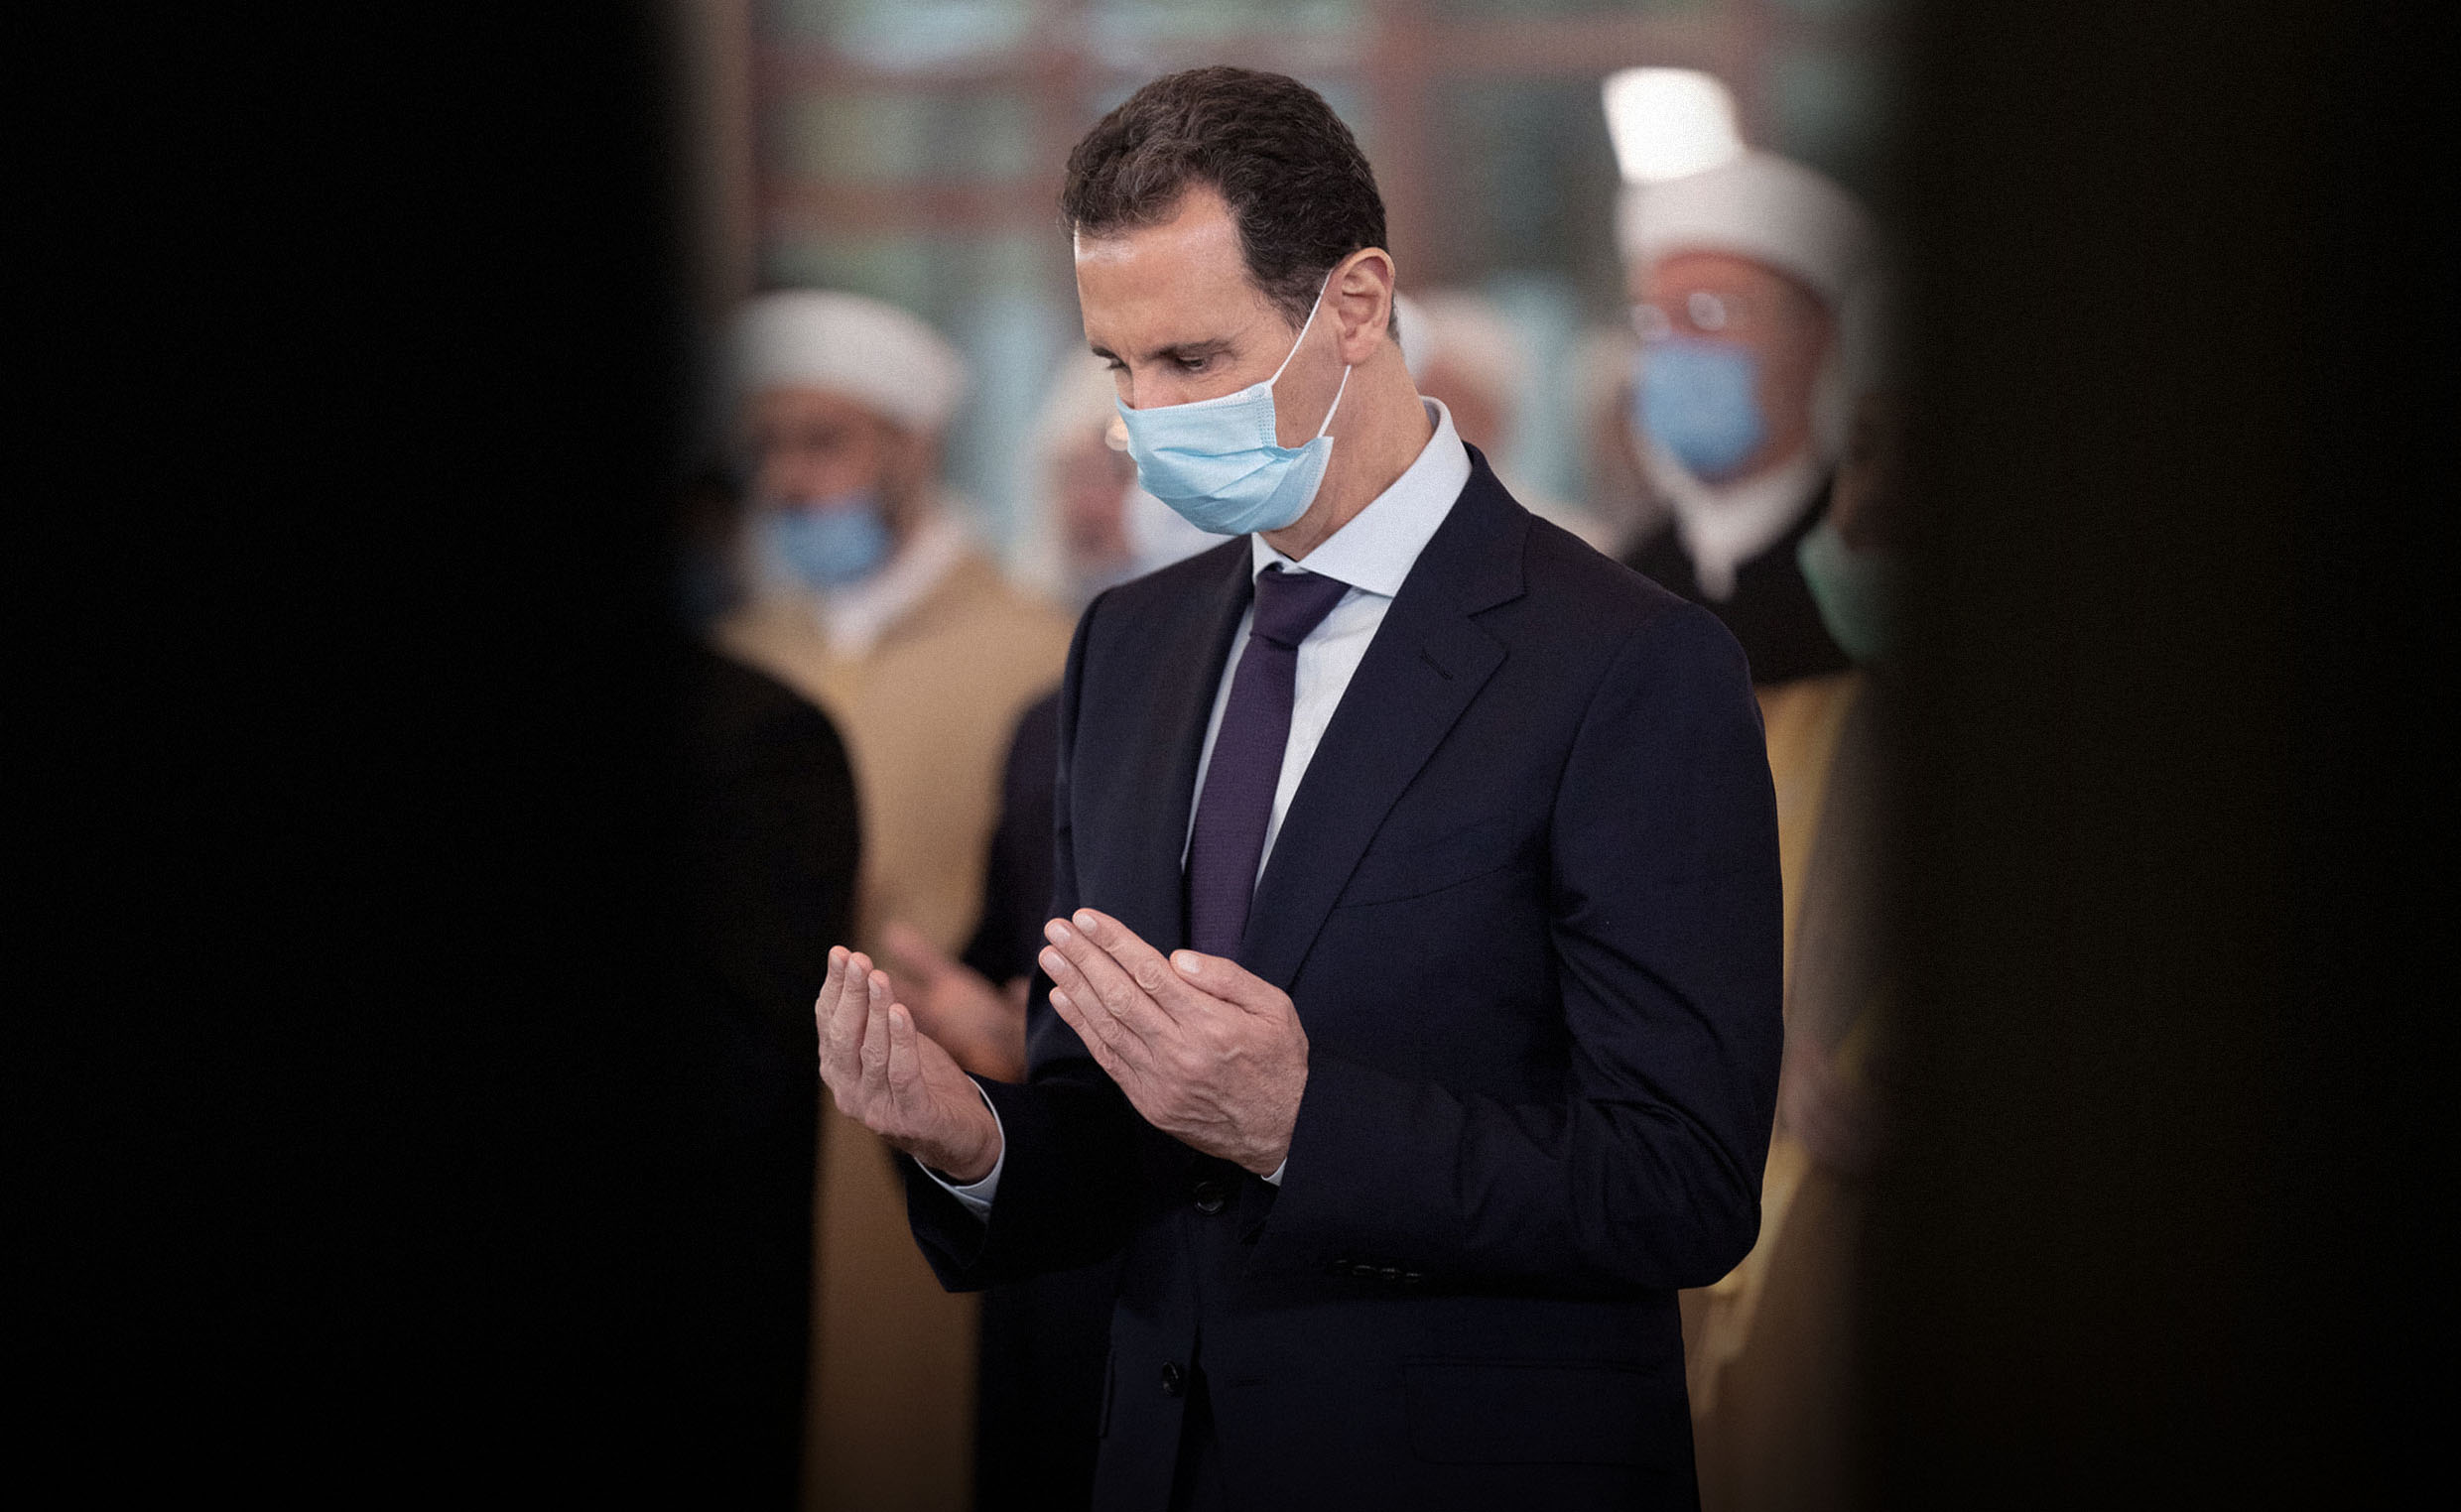 صورة الأسد يتأكد من زوال آثار الدماء عن يديه استعداداً للانفتاح على المجتمع الدولي